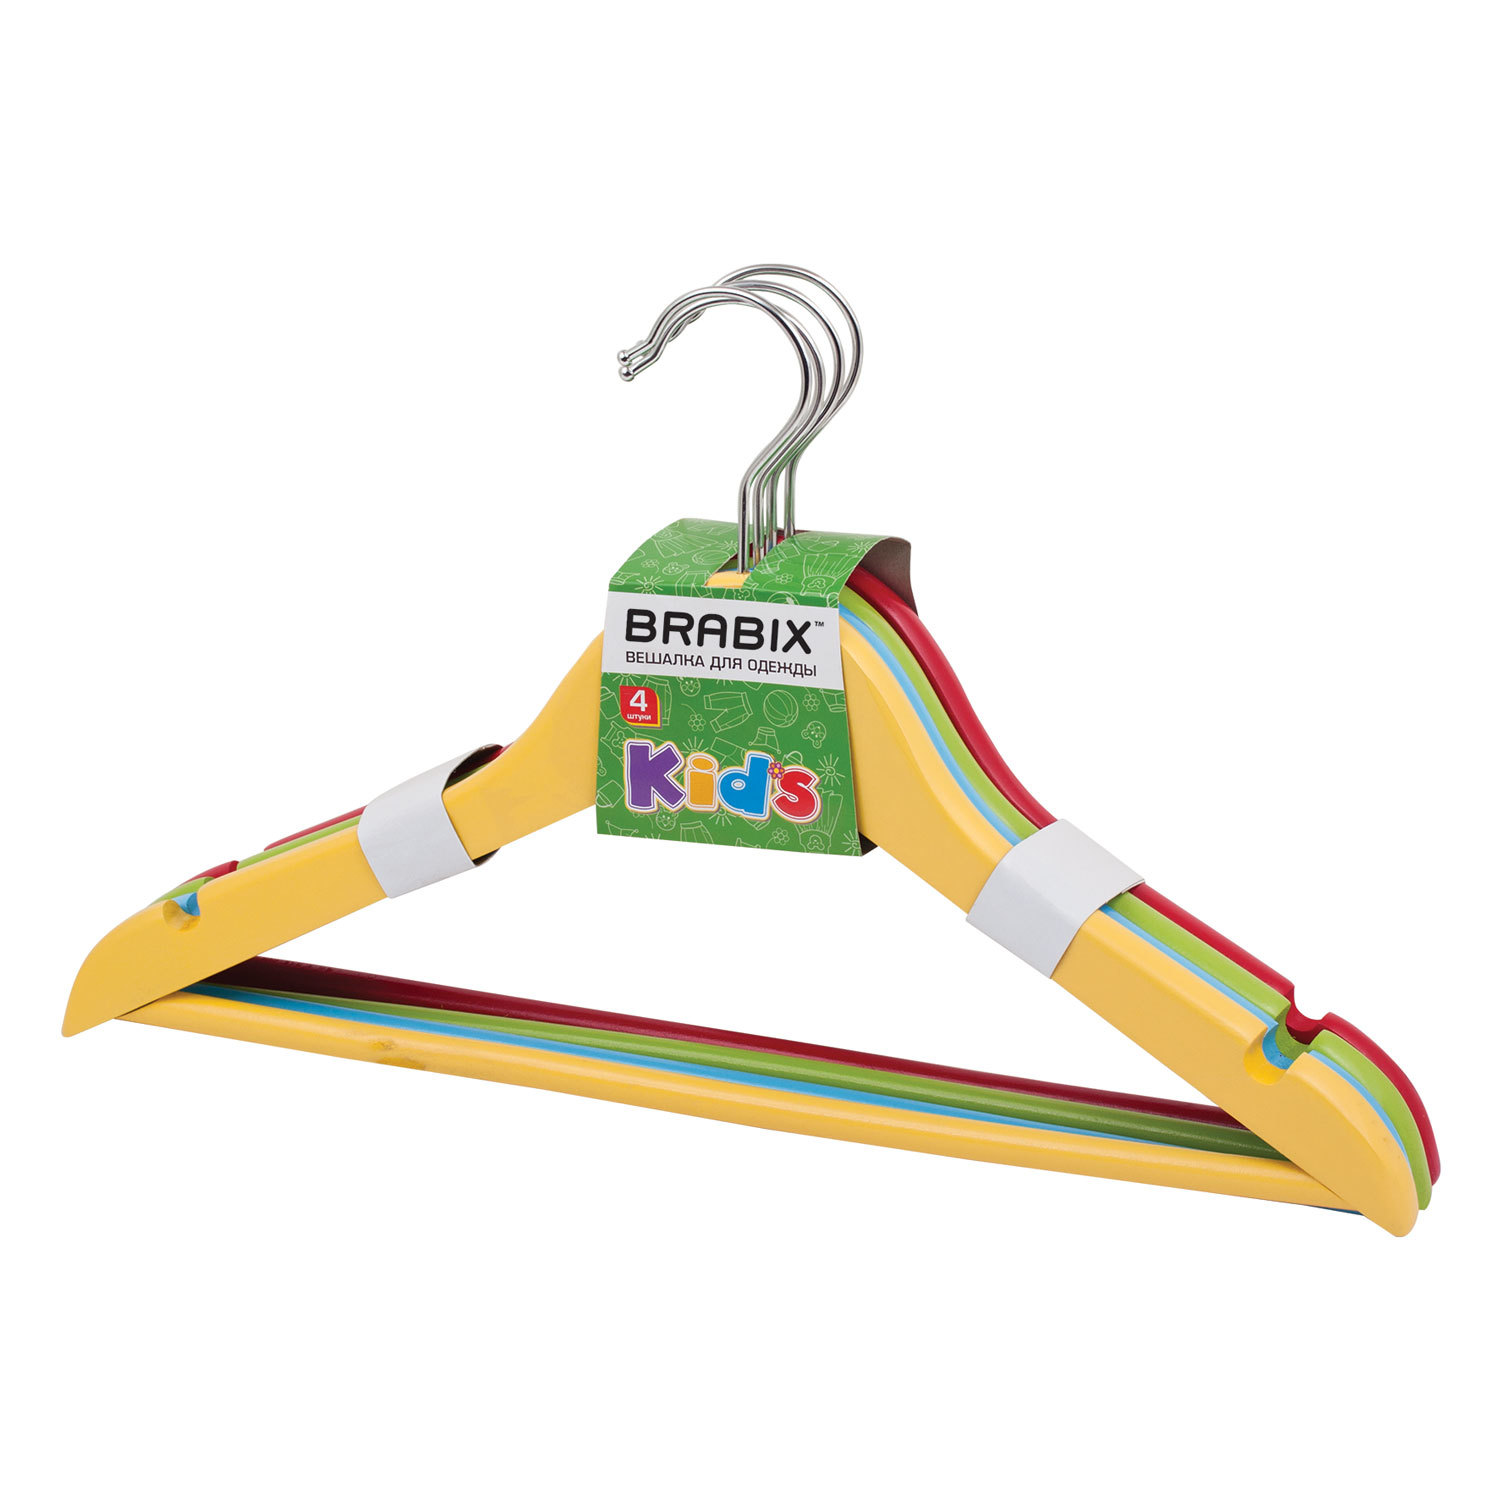 Вешалки-плечики Brabix, детские, комплект 4 шт., дерево, 36 см, цвет ассорти (красный, желтый, синий, зеленый)